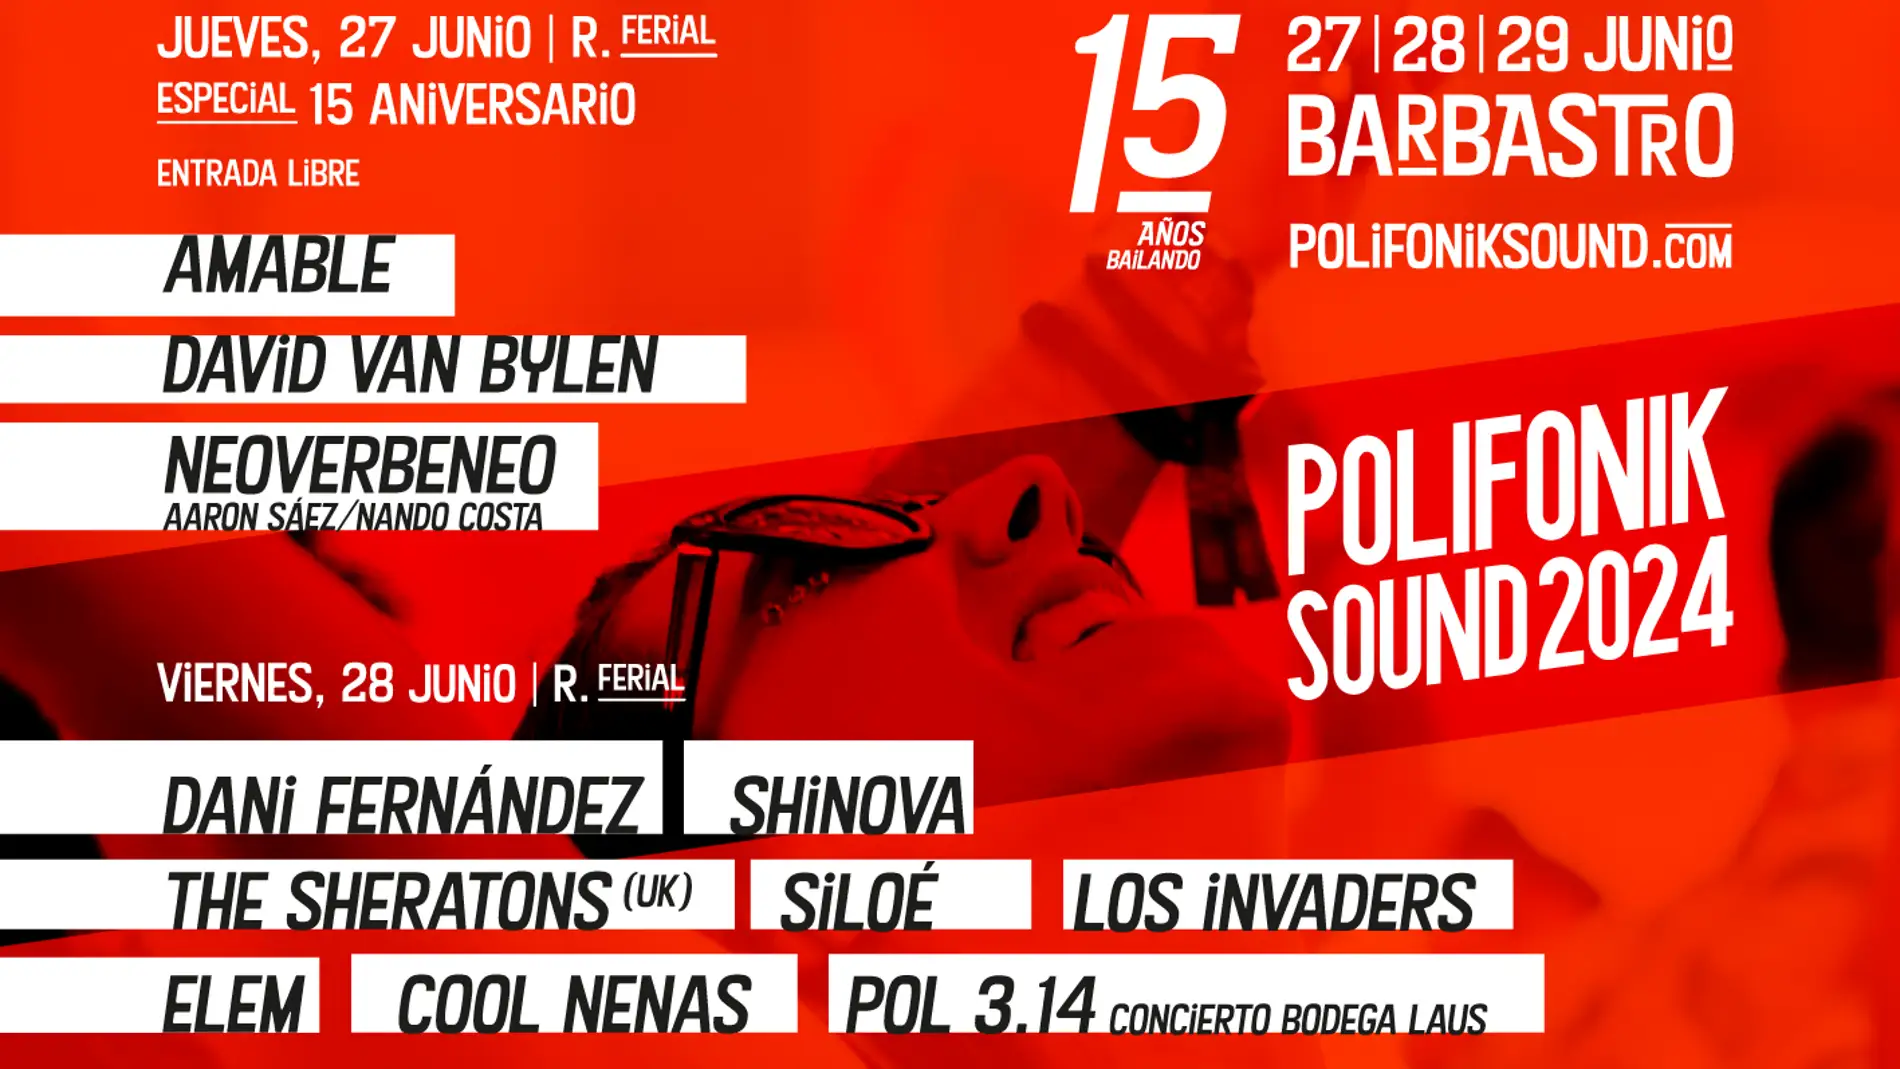 PolifoniK Sound ultima los preparativos de su 15 aniversario